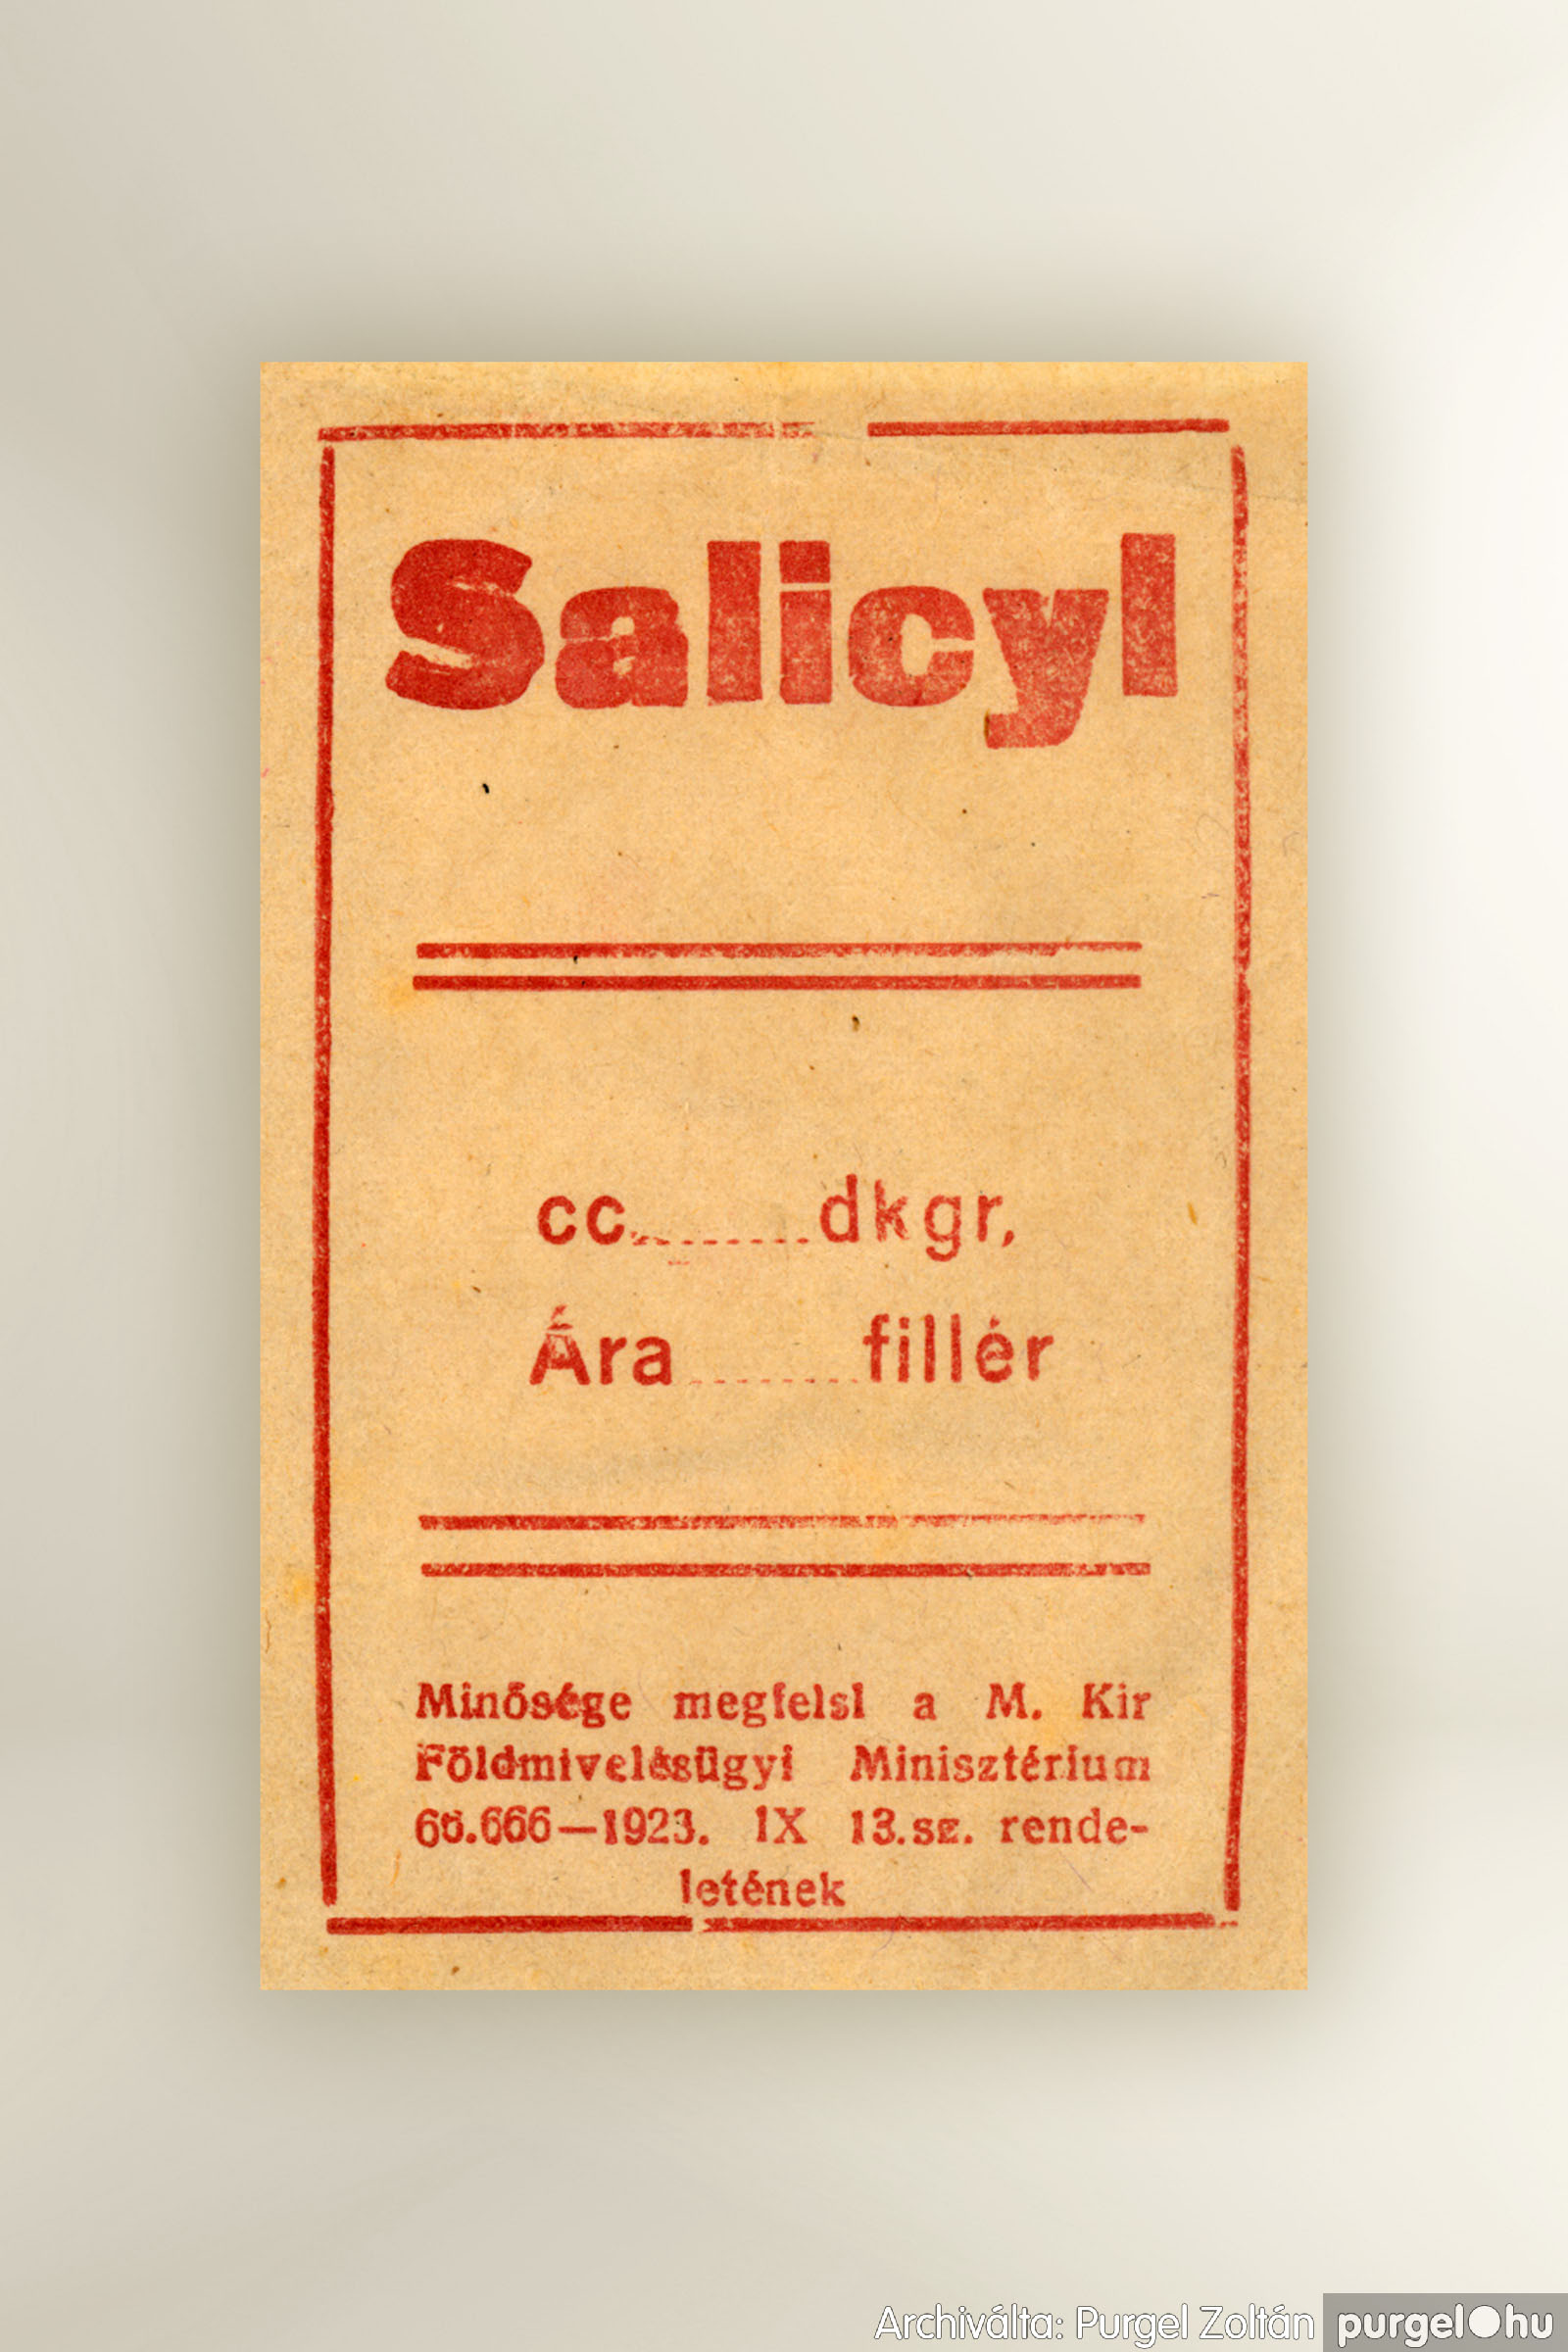 041 Salicyl papírtasak – Archiválta：PURGEL ZOLTÁN©.jpg